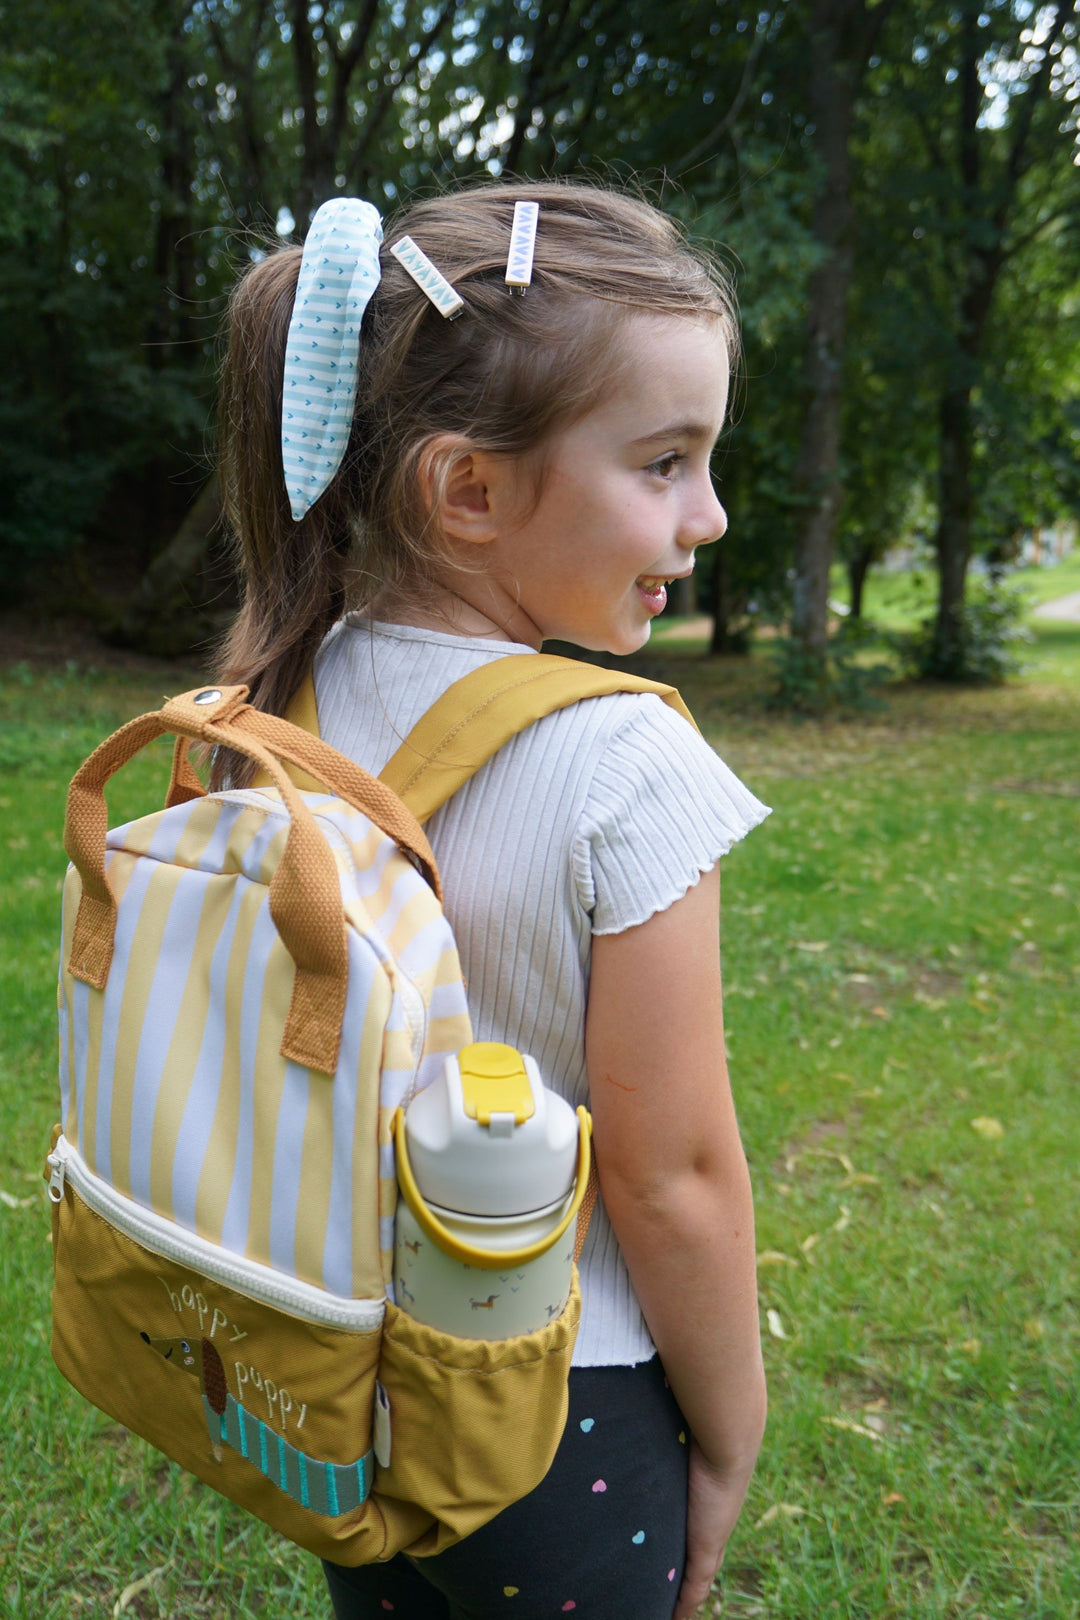 Children's backpack Teckel